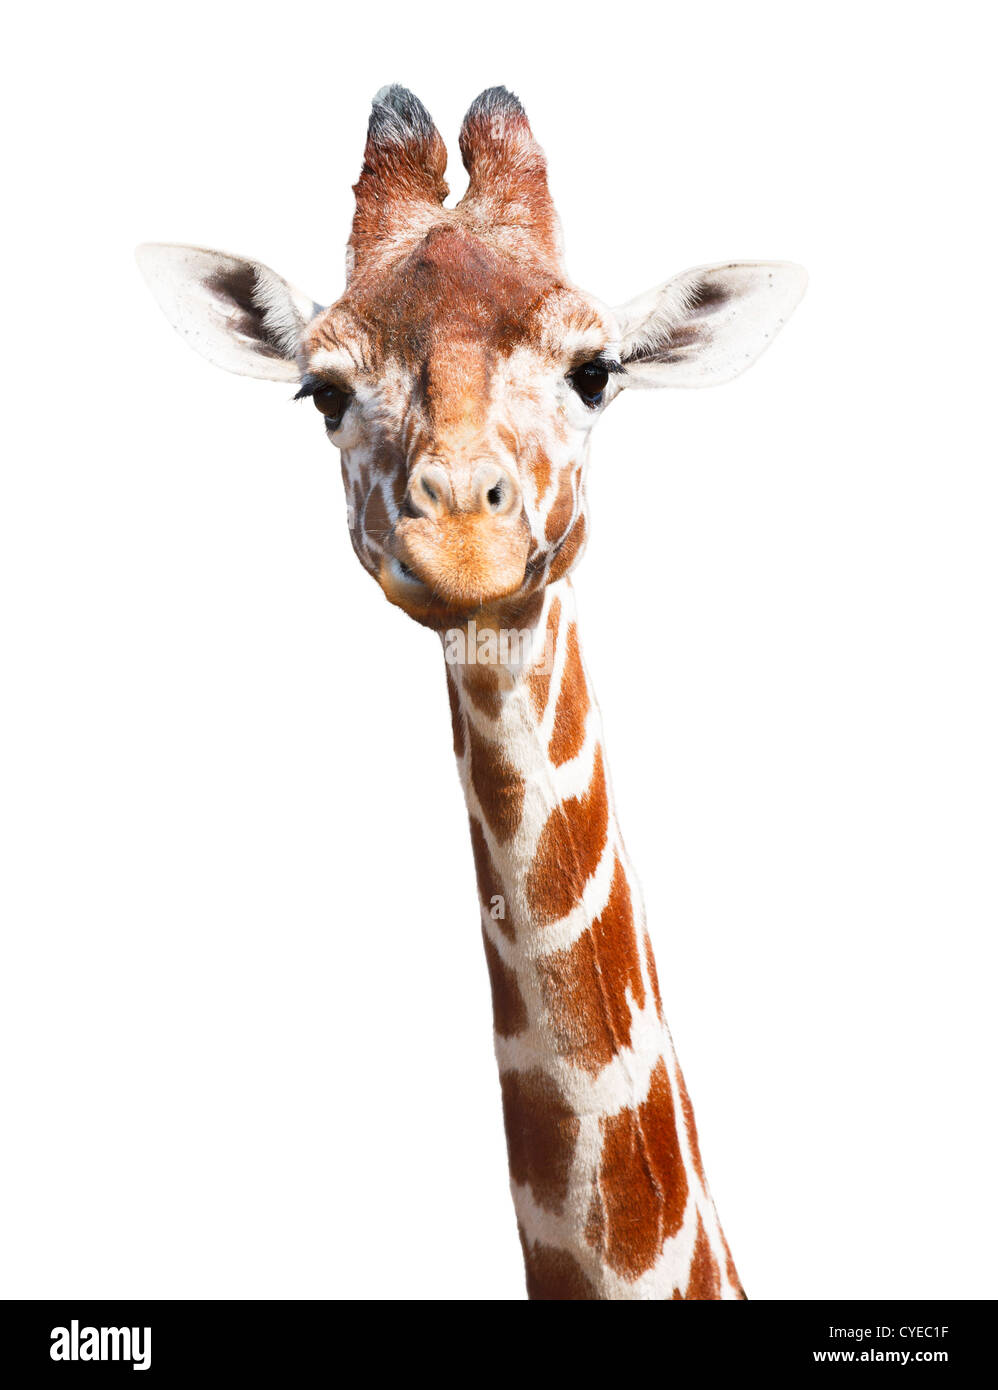 Giraffe Kopf und Hals isoliert auf einem weißen Hintergrund mit Beschneidungspfad Stockfoto